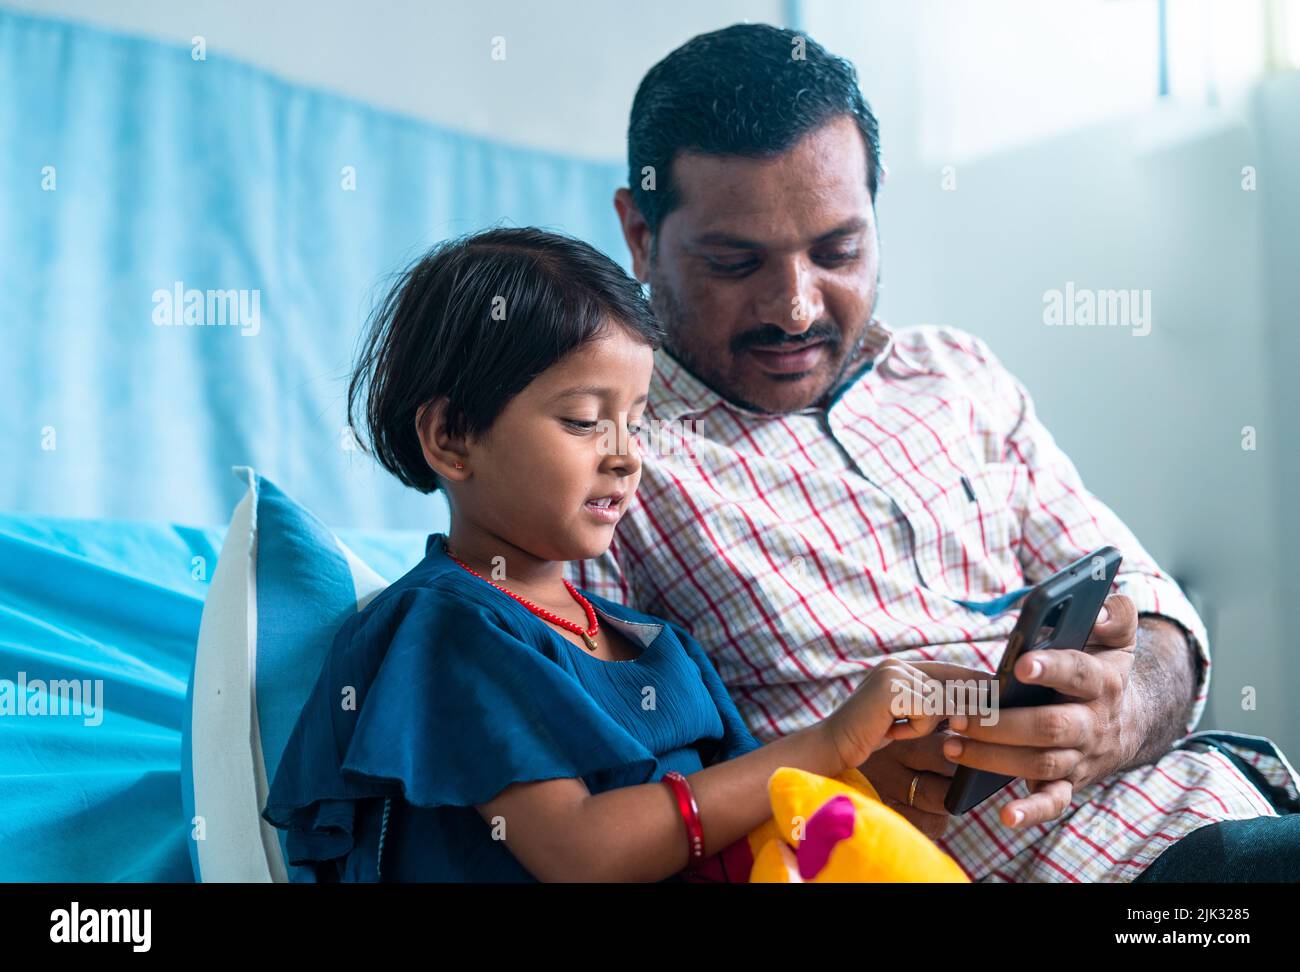 Glücklich lächelnd erholte sich Tochter mit Vater, der Videos auf dem Mobiltelefon ansah, während er auf der Krankenstation saß - Konzept der sozialen Medien, Unterstützung der Familie Stockfoto